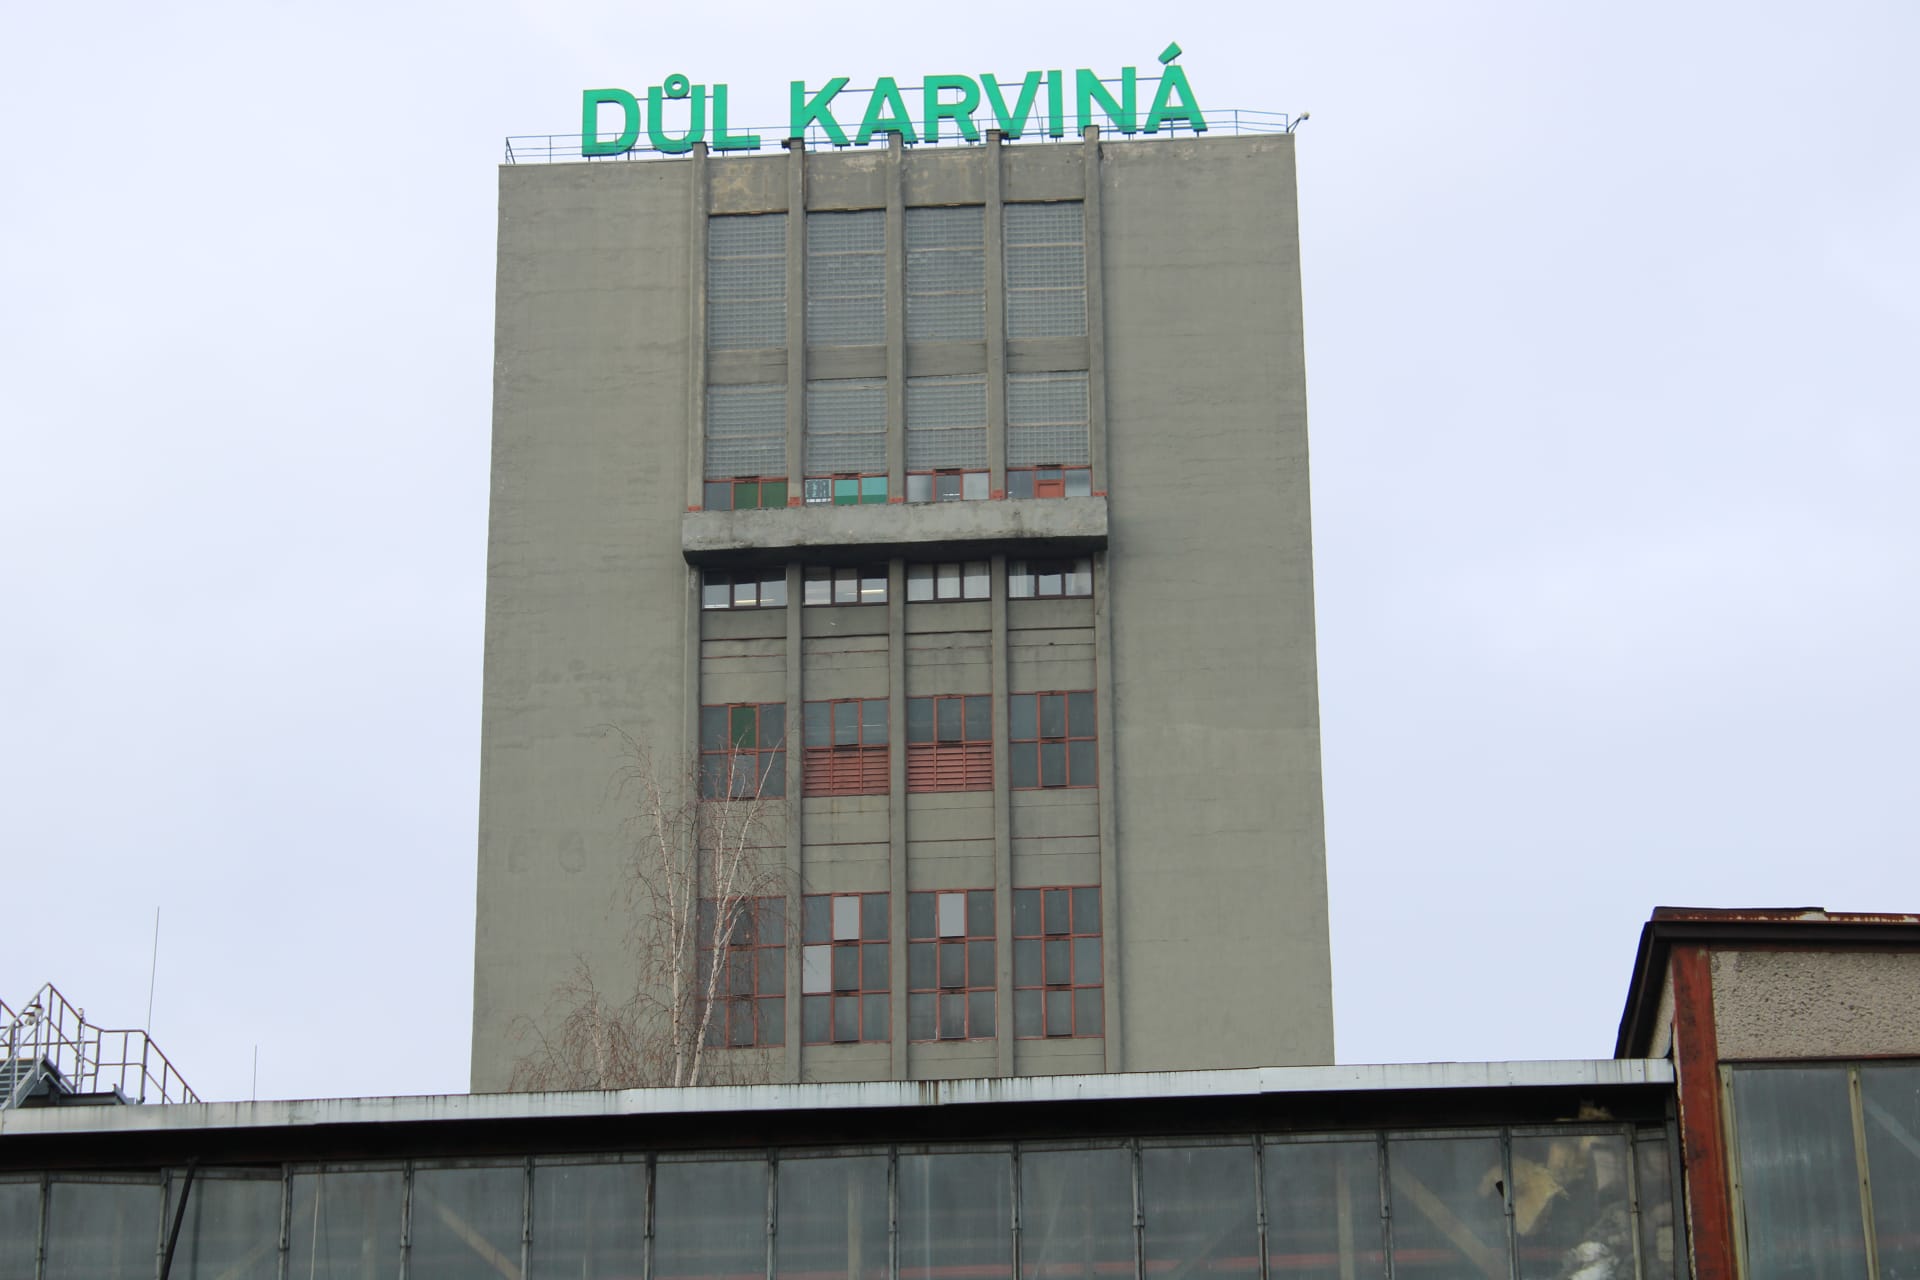 Tam v Karviné, poslední uhelná šachta, Důl Karviná závod ČSA, ukončila těžbu v únoru 2021. Uhlí se těží už jen v sousední Stonavě.